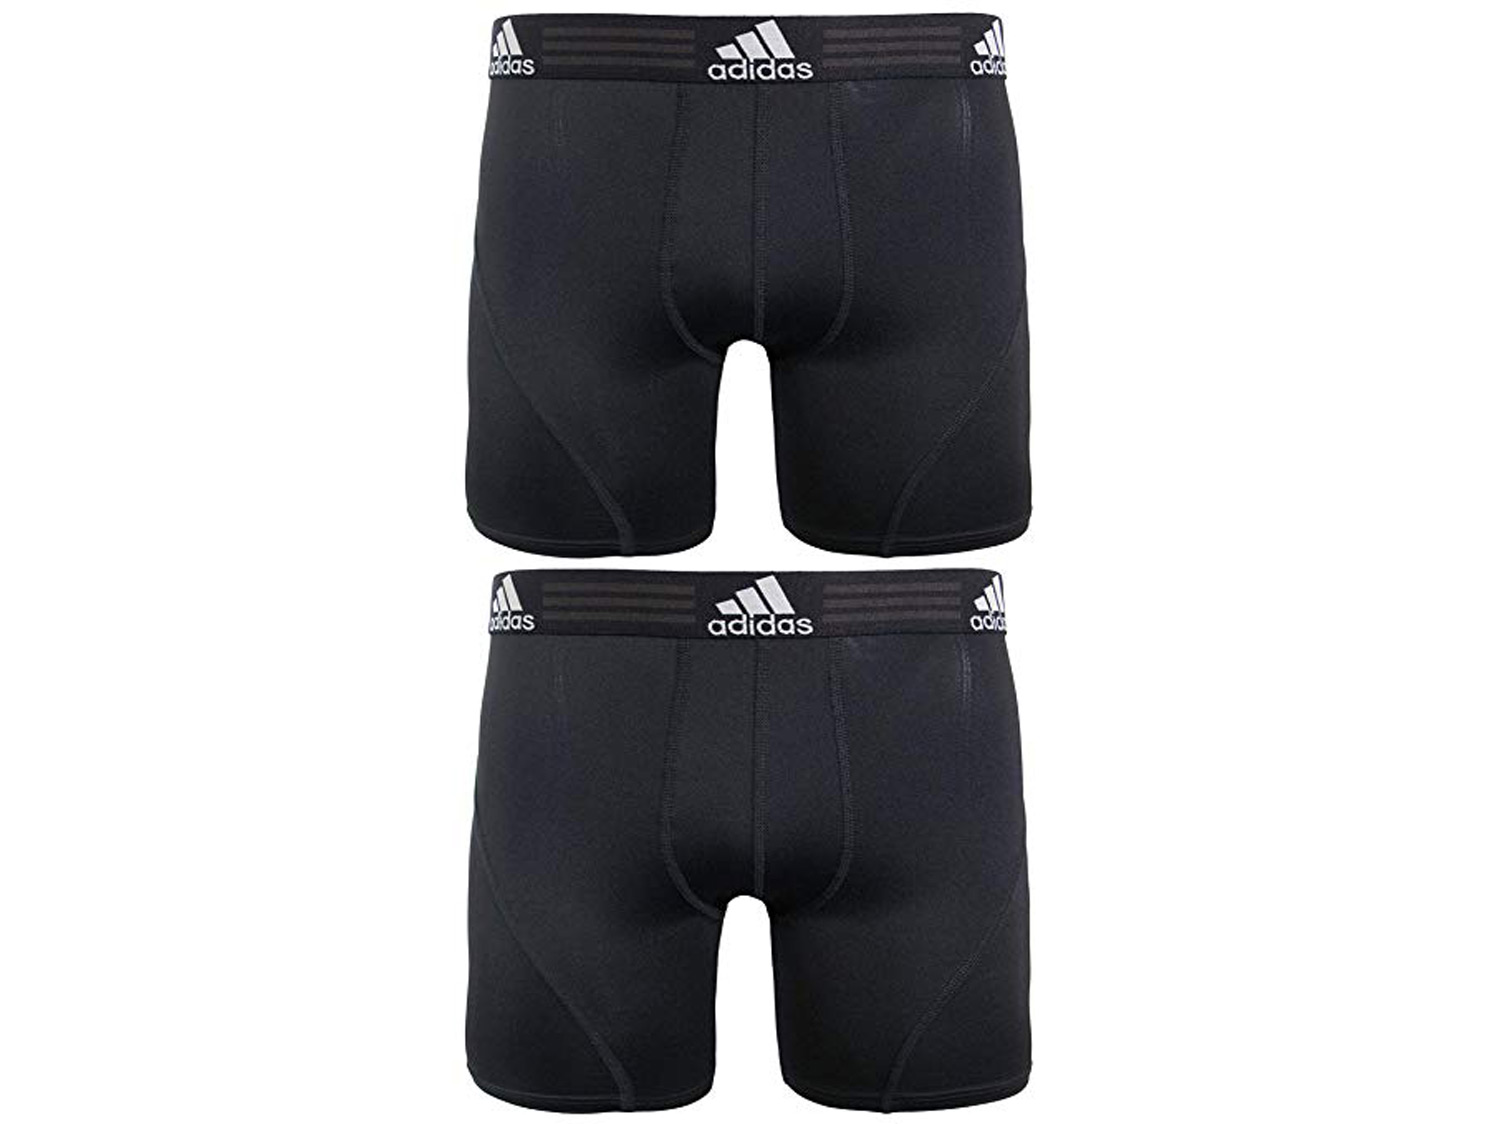 adidas Men's Sport Performance Climalite Boxer Brief Underwear